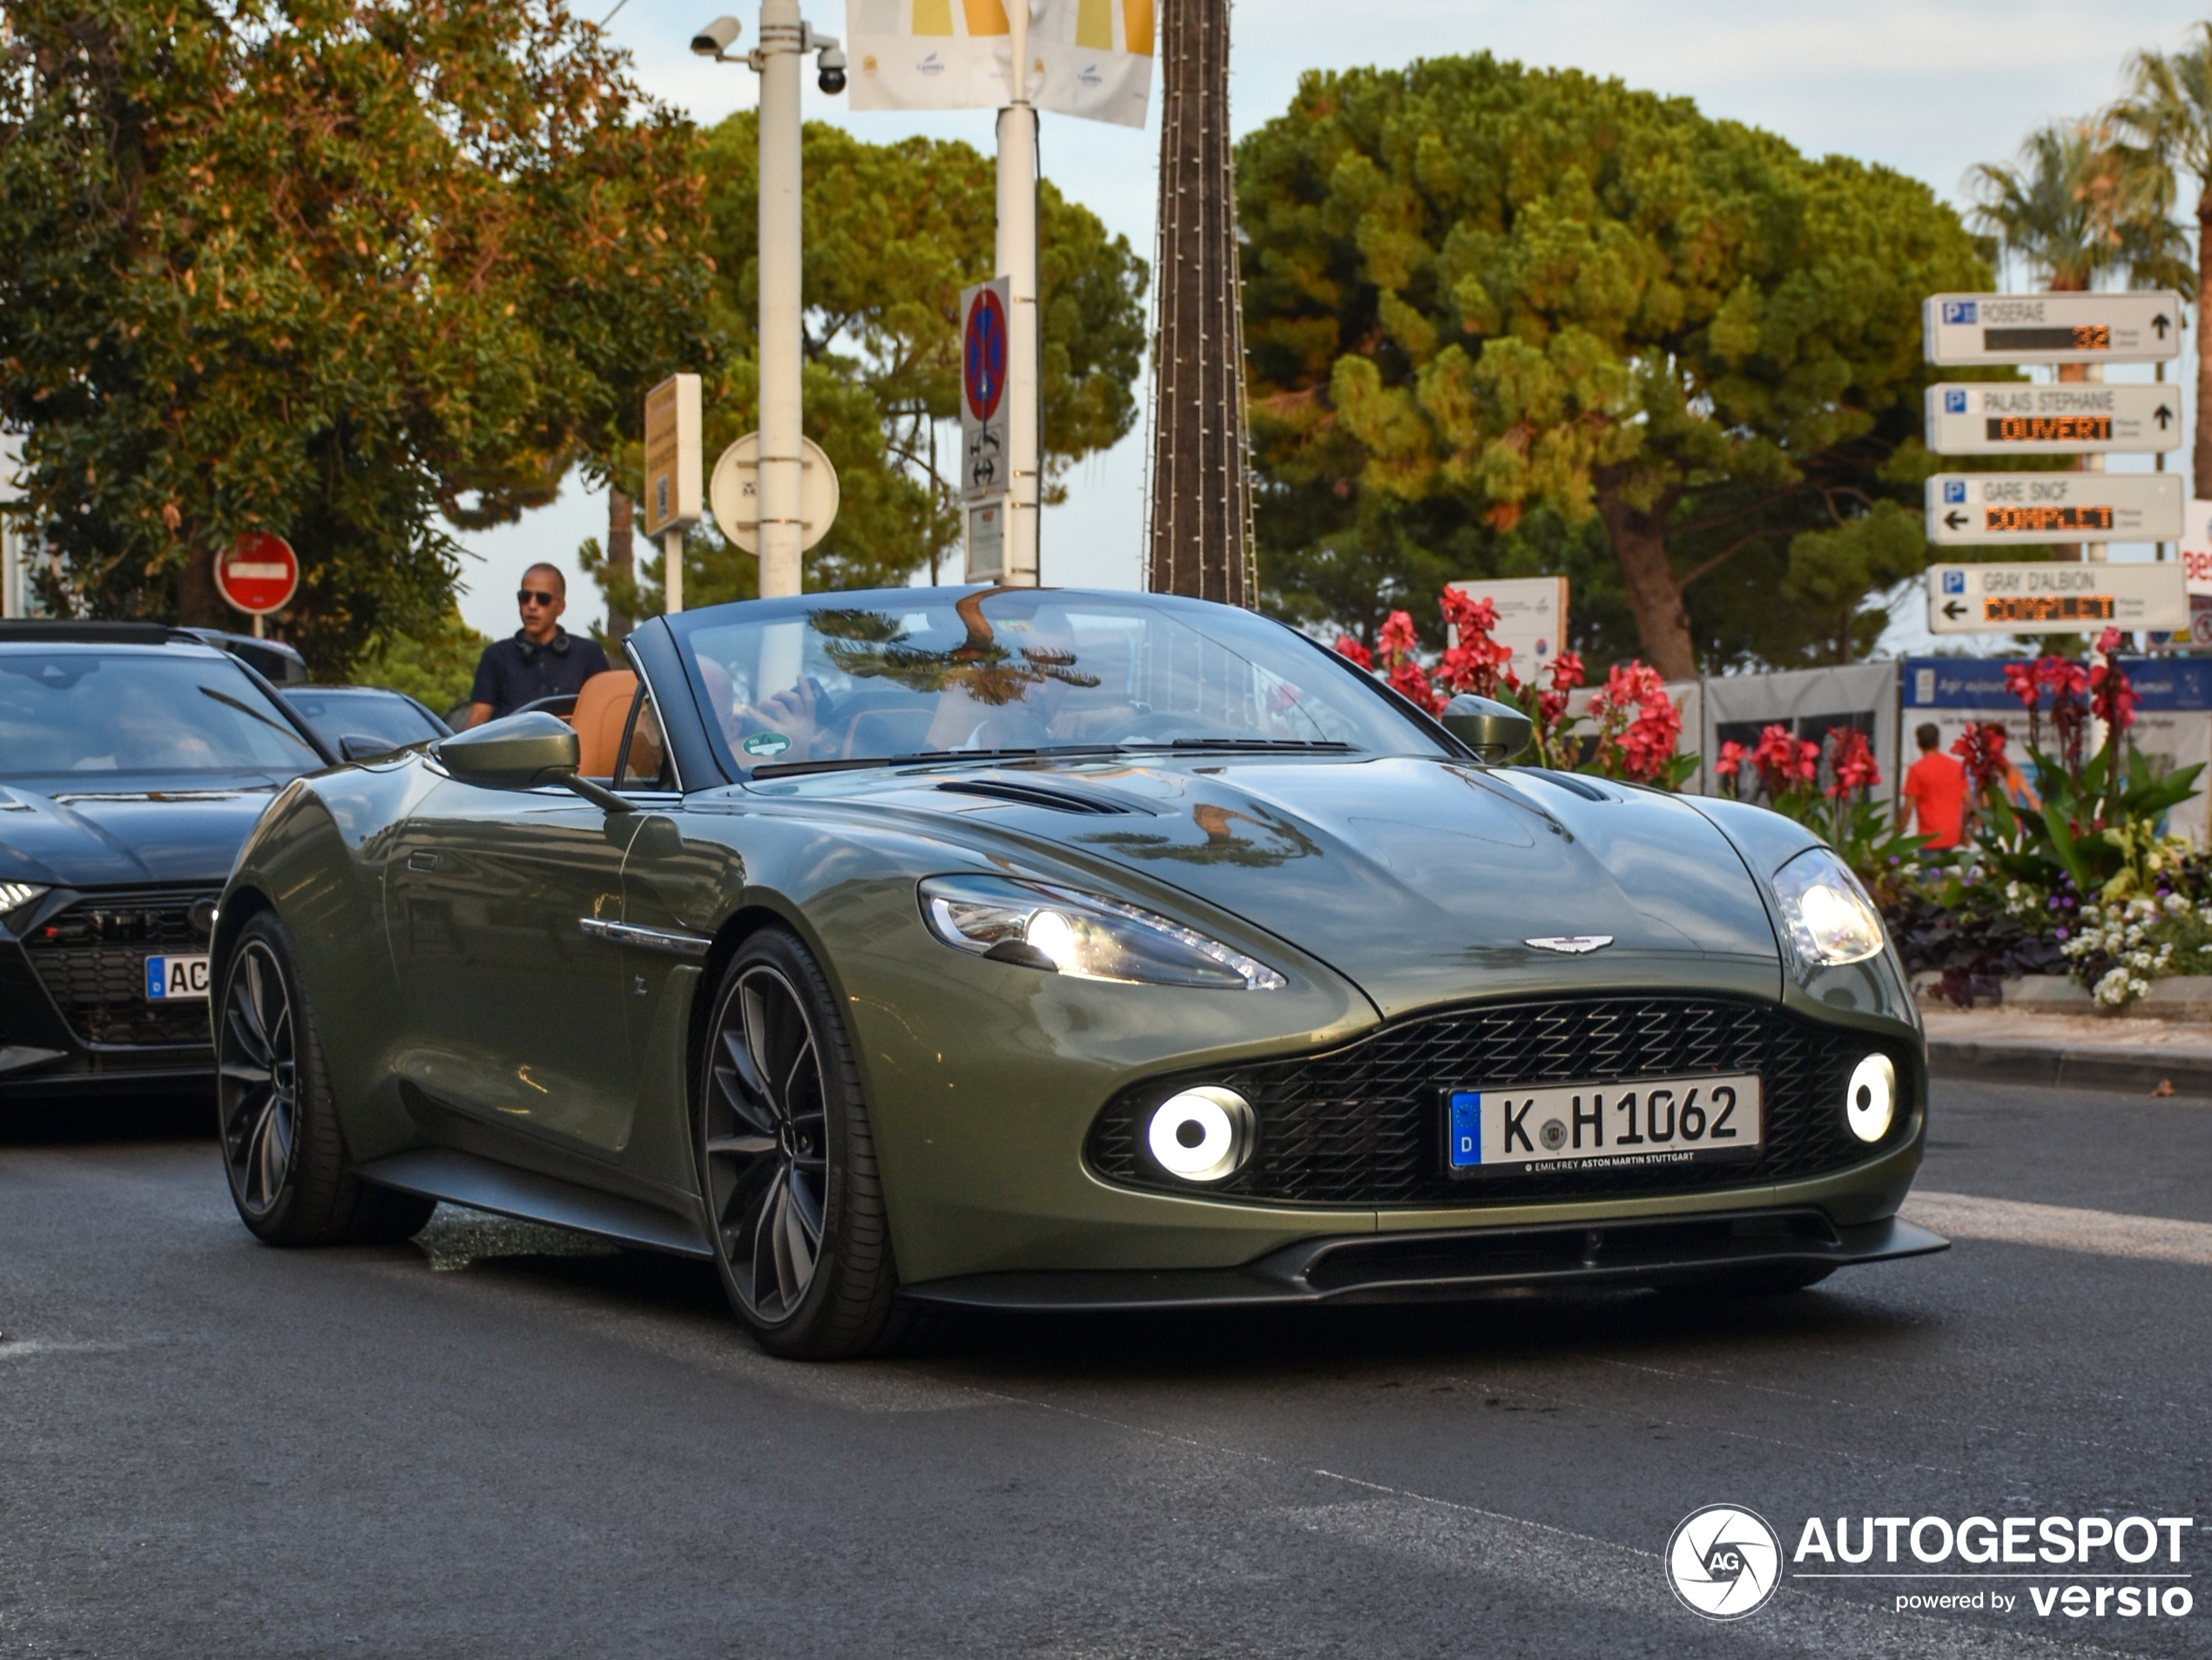 A beautiful Aston Martin Vanquish Volante Zagato shows up in Cannes